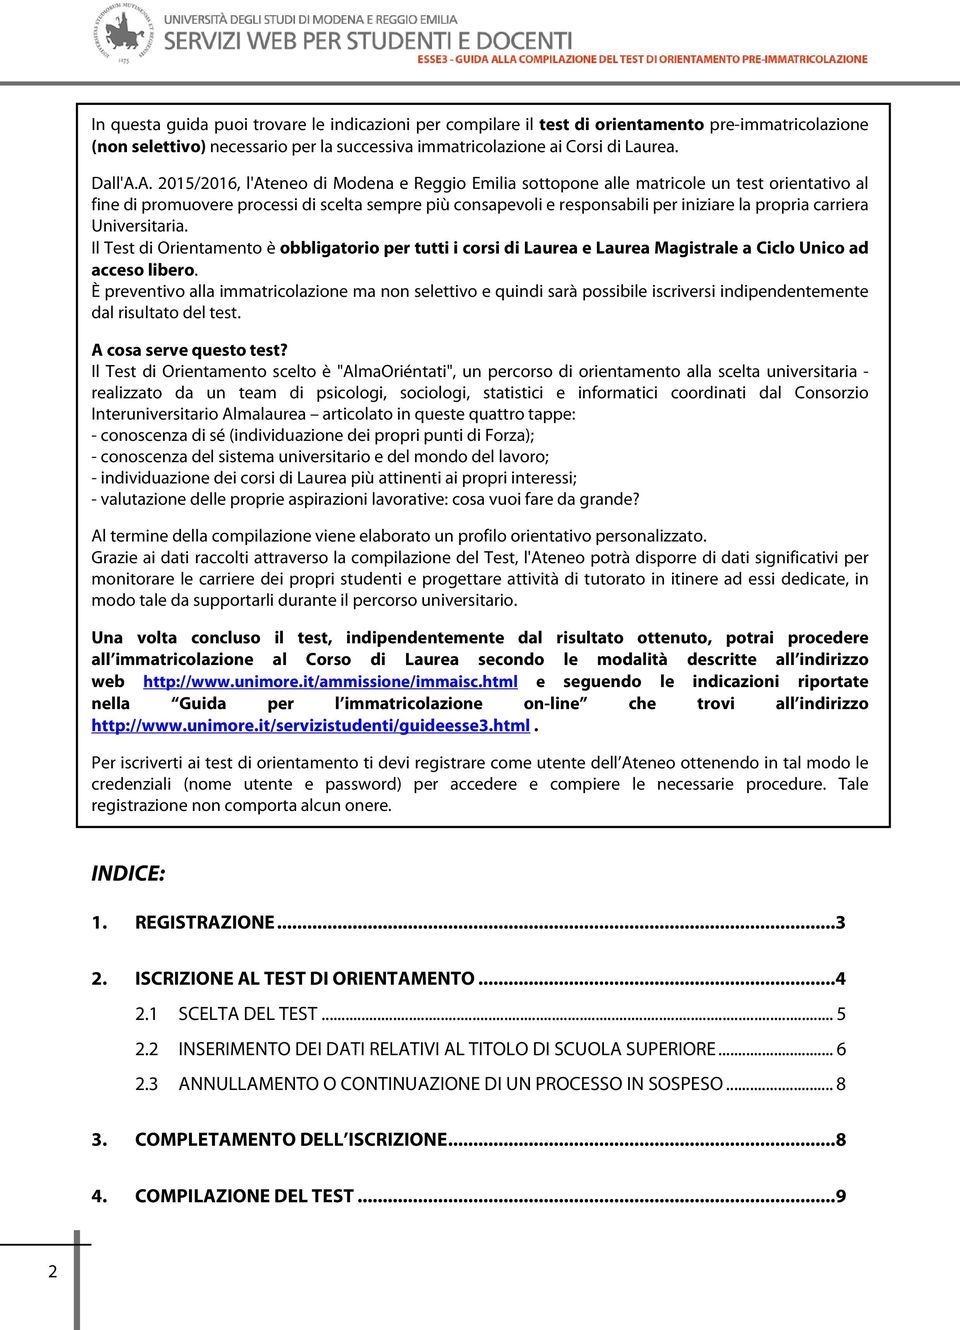 carriera Universitaria. Il Test di Orientamento è obbligatorio per tutti i corsi di Laurea e Laurea Magistrale a Ciclo Unico ad acceso libero.